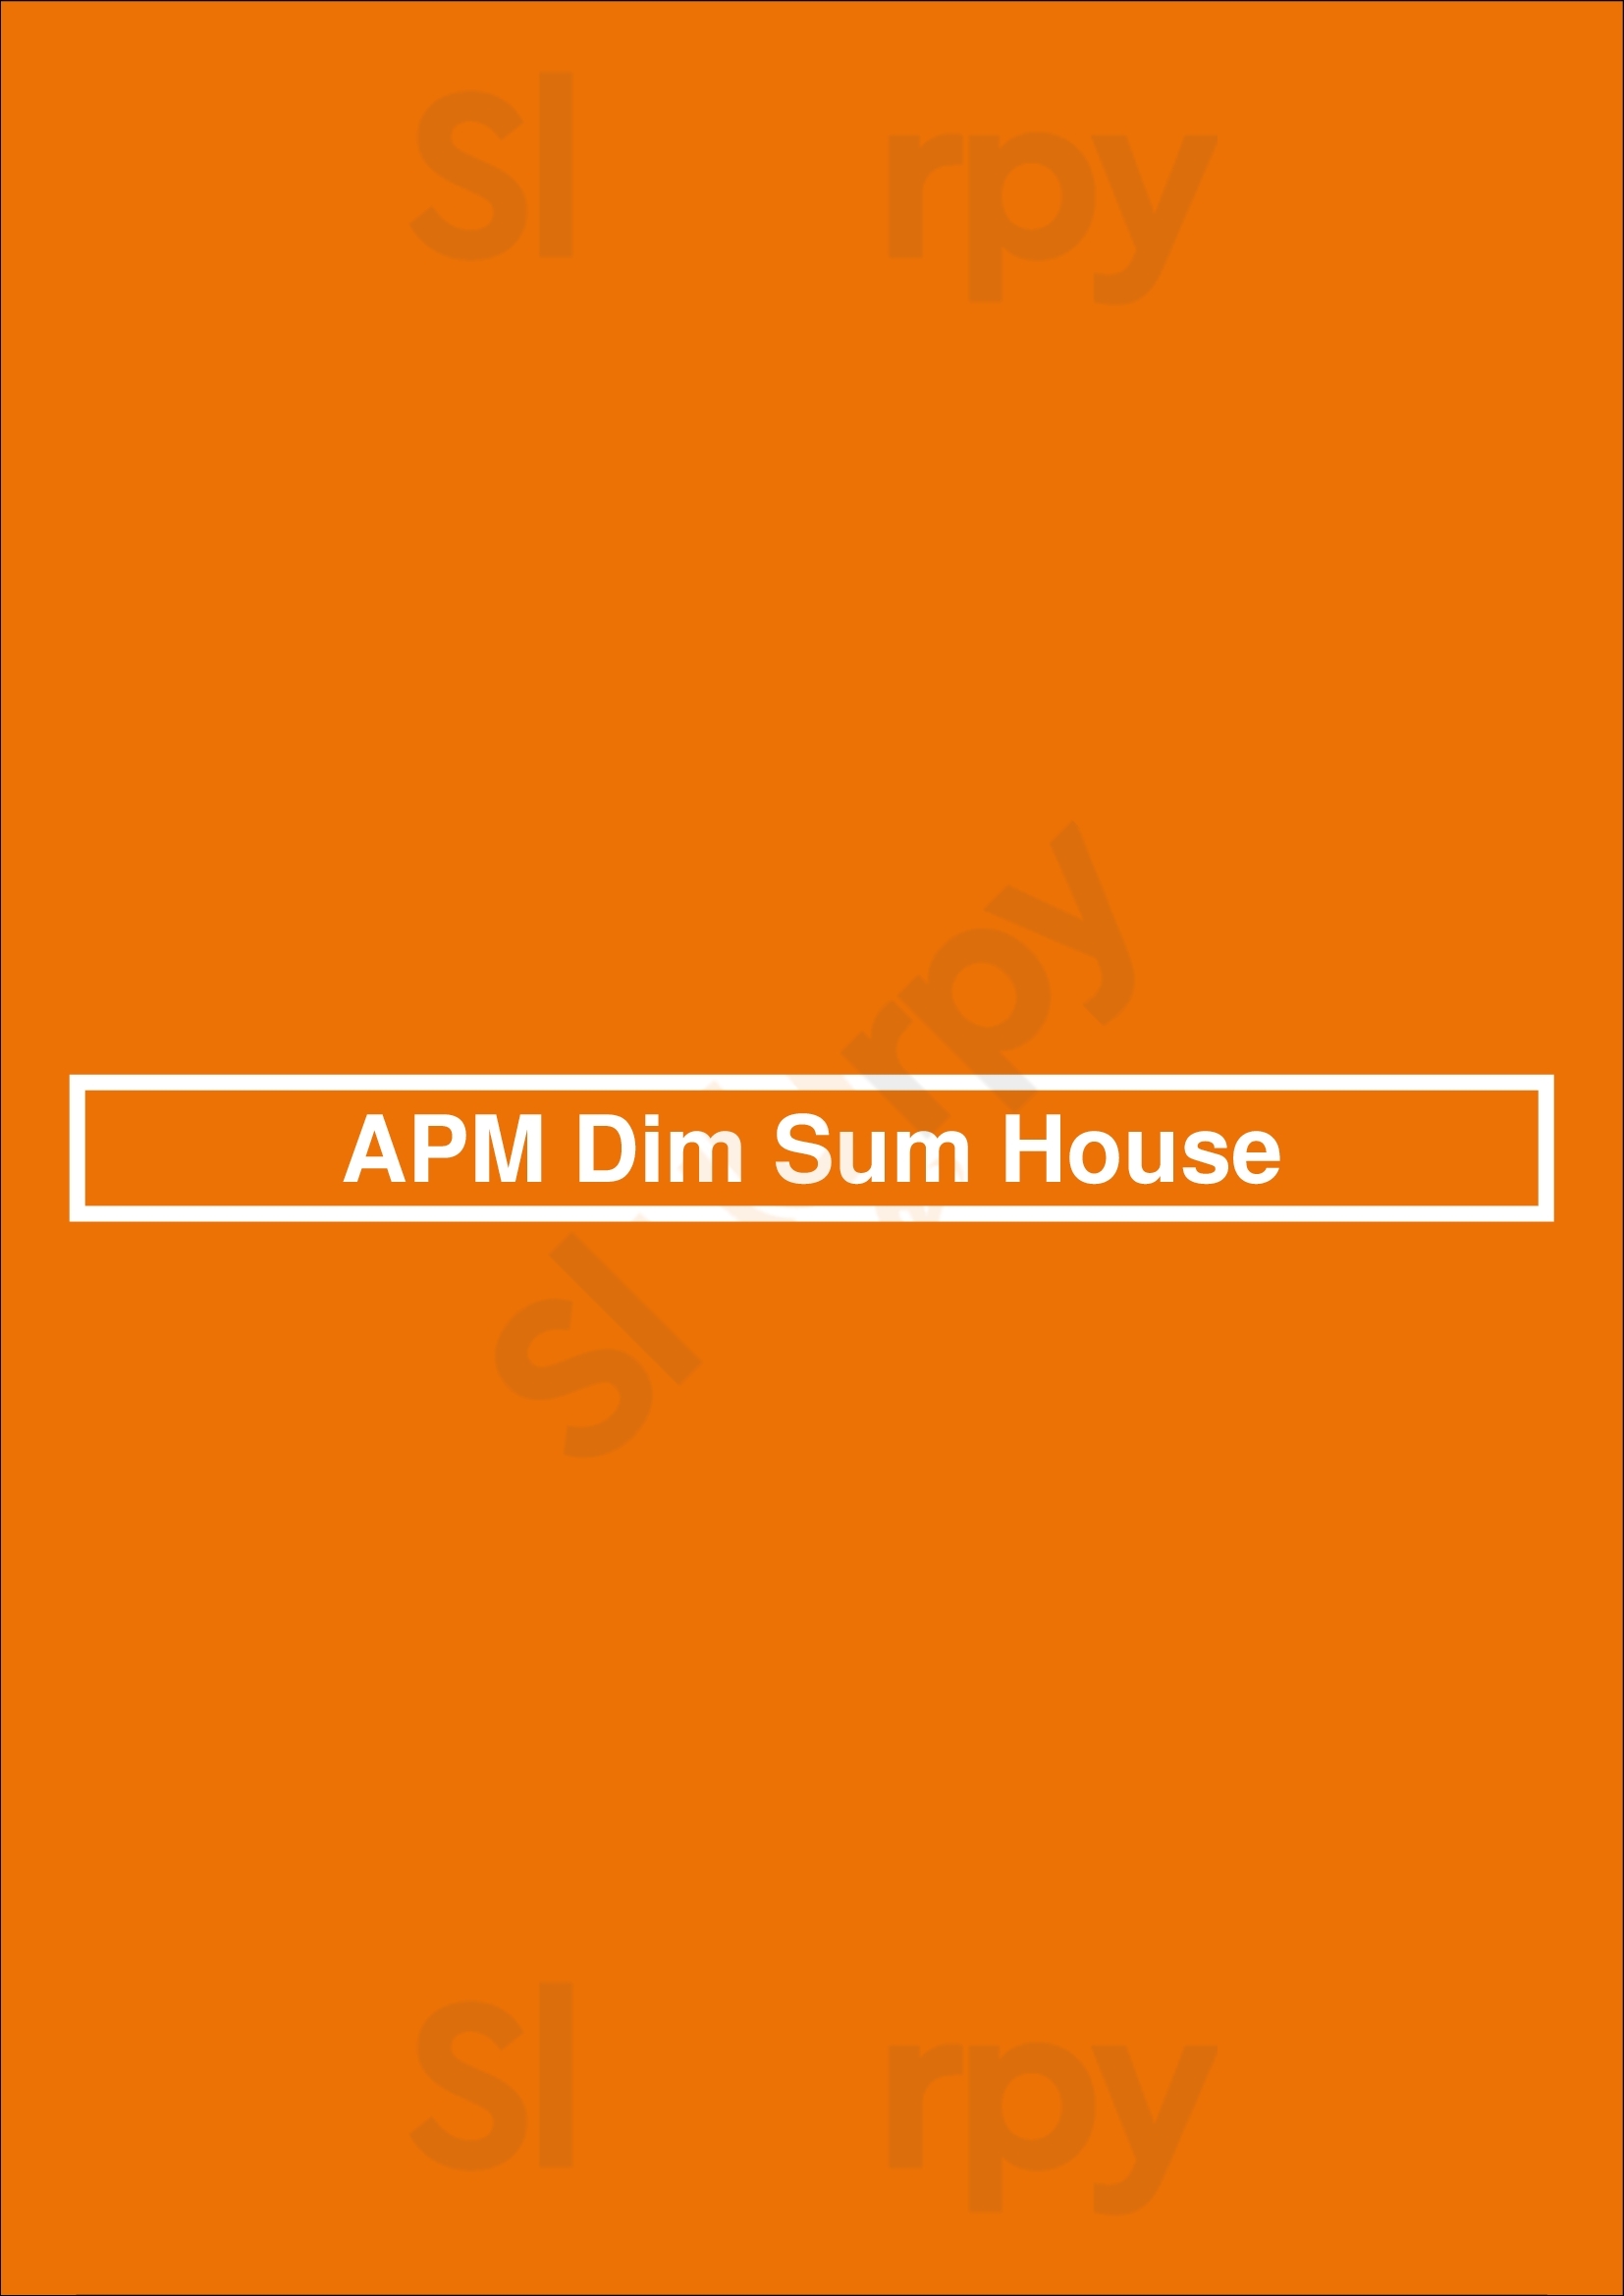 Apm Dim Sum House Markham Menu - 1